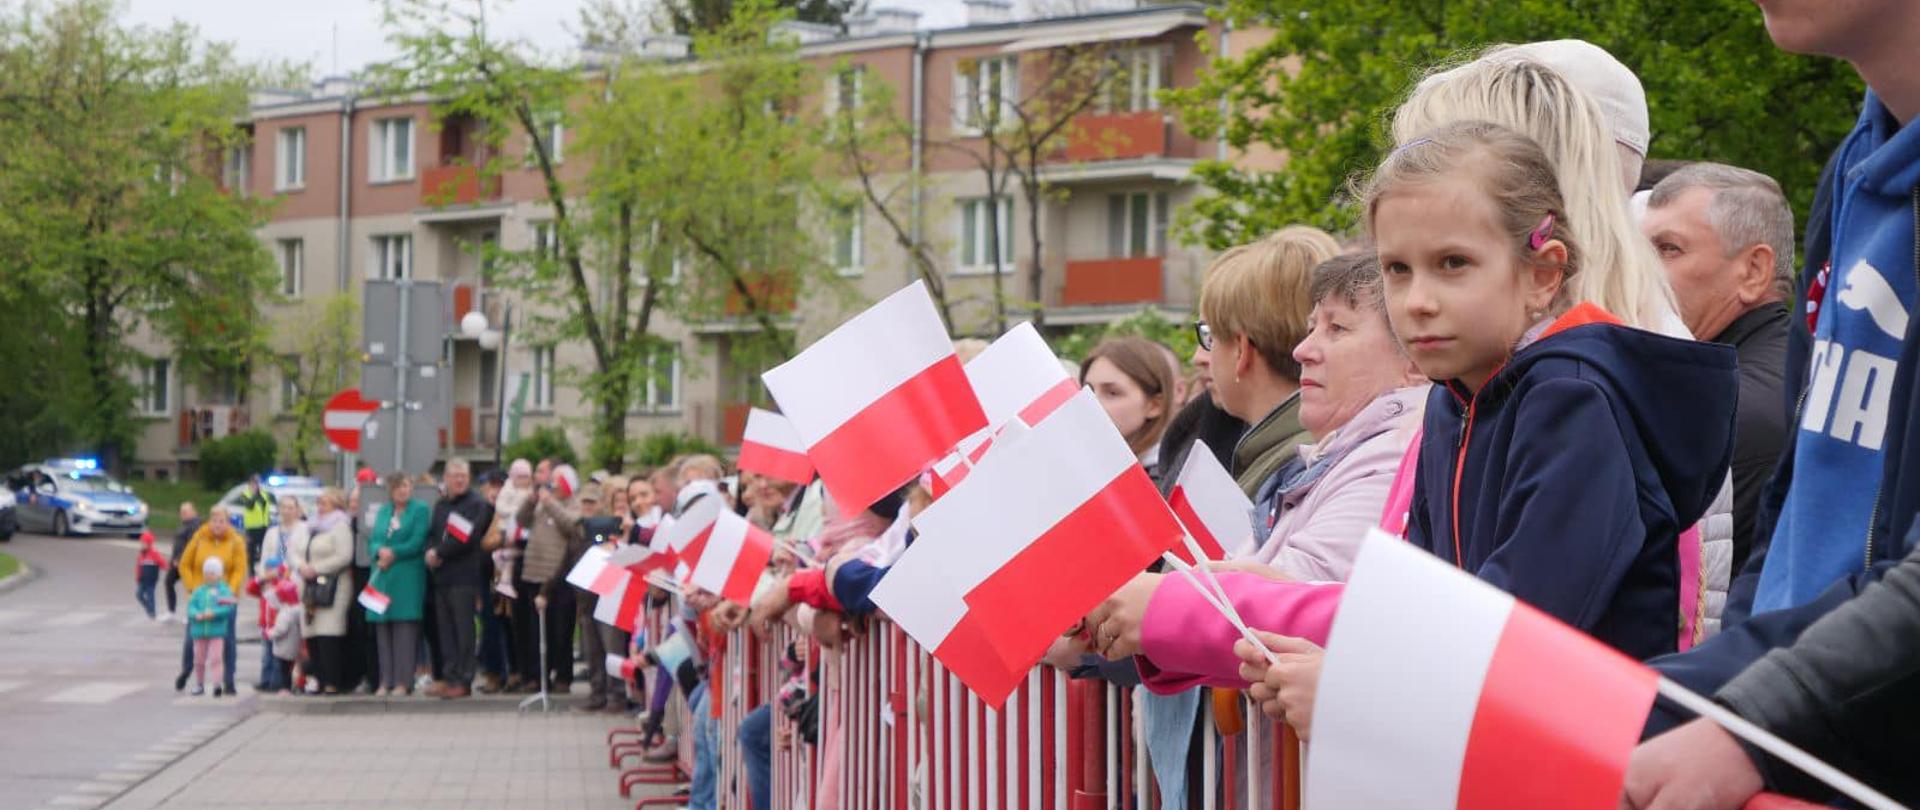 Zdjęcie przedstawia ludzi stojących na zewnątrz, za barierkami i trzymają w rękach biało-czerwone flagi